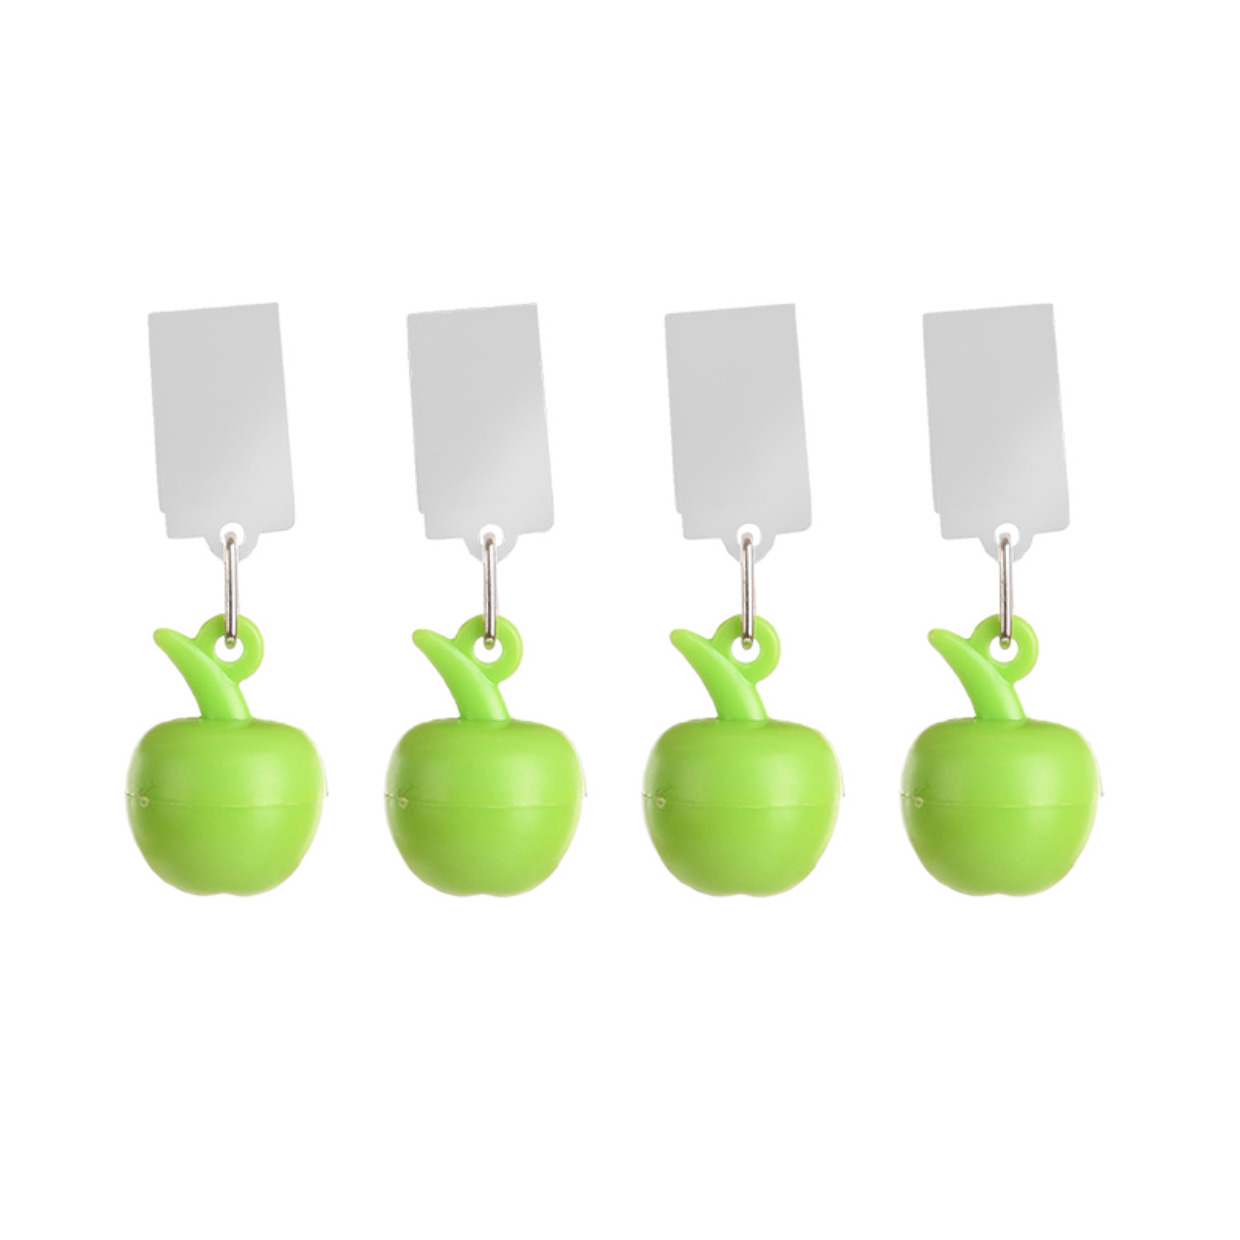 Tafelkleedgewichten appels 4x groen kunststof voor tafelkleden en tafelzeilen